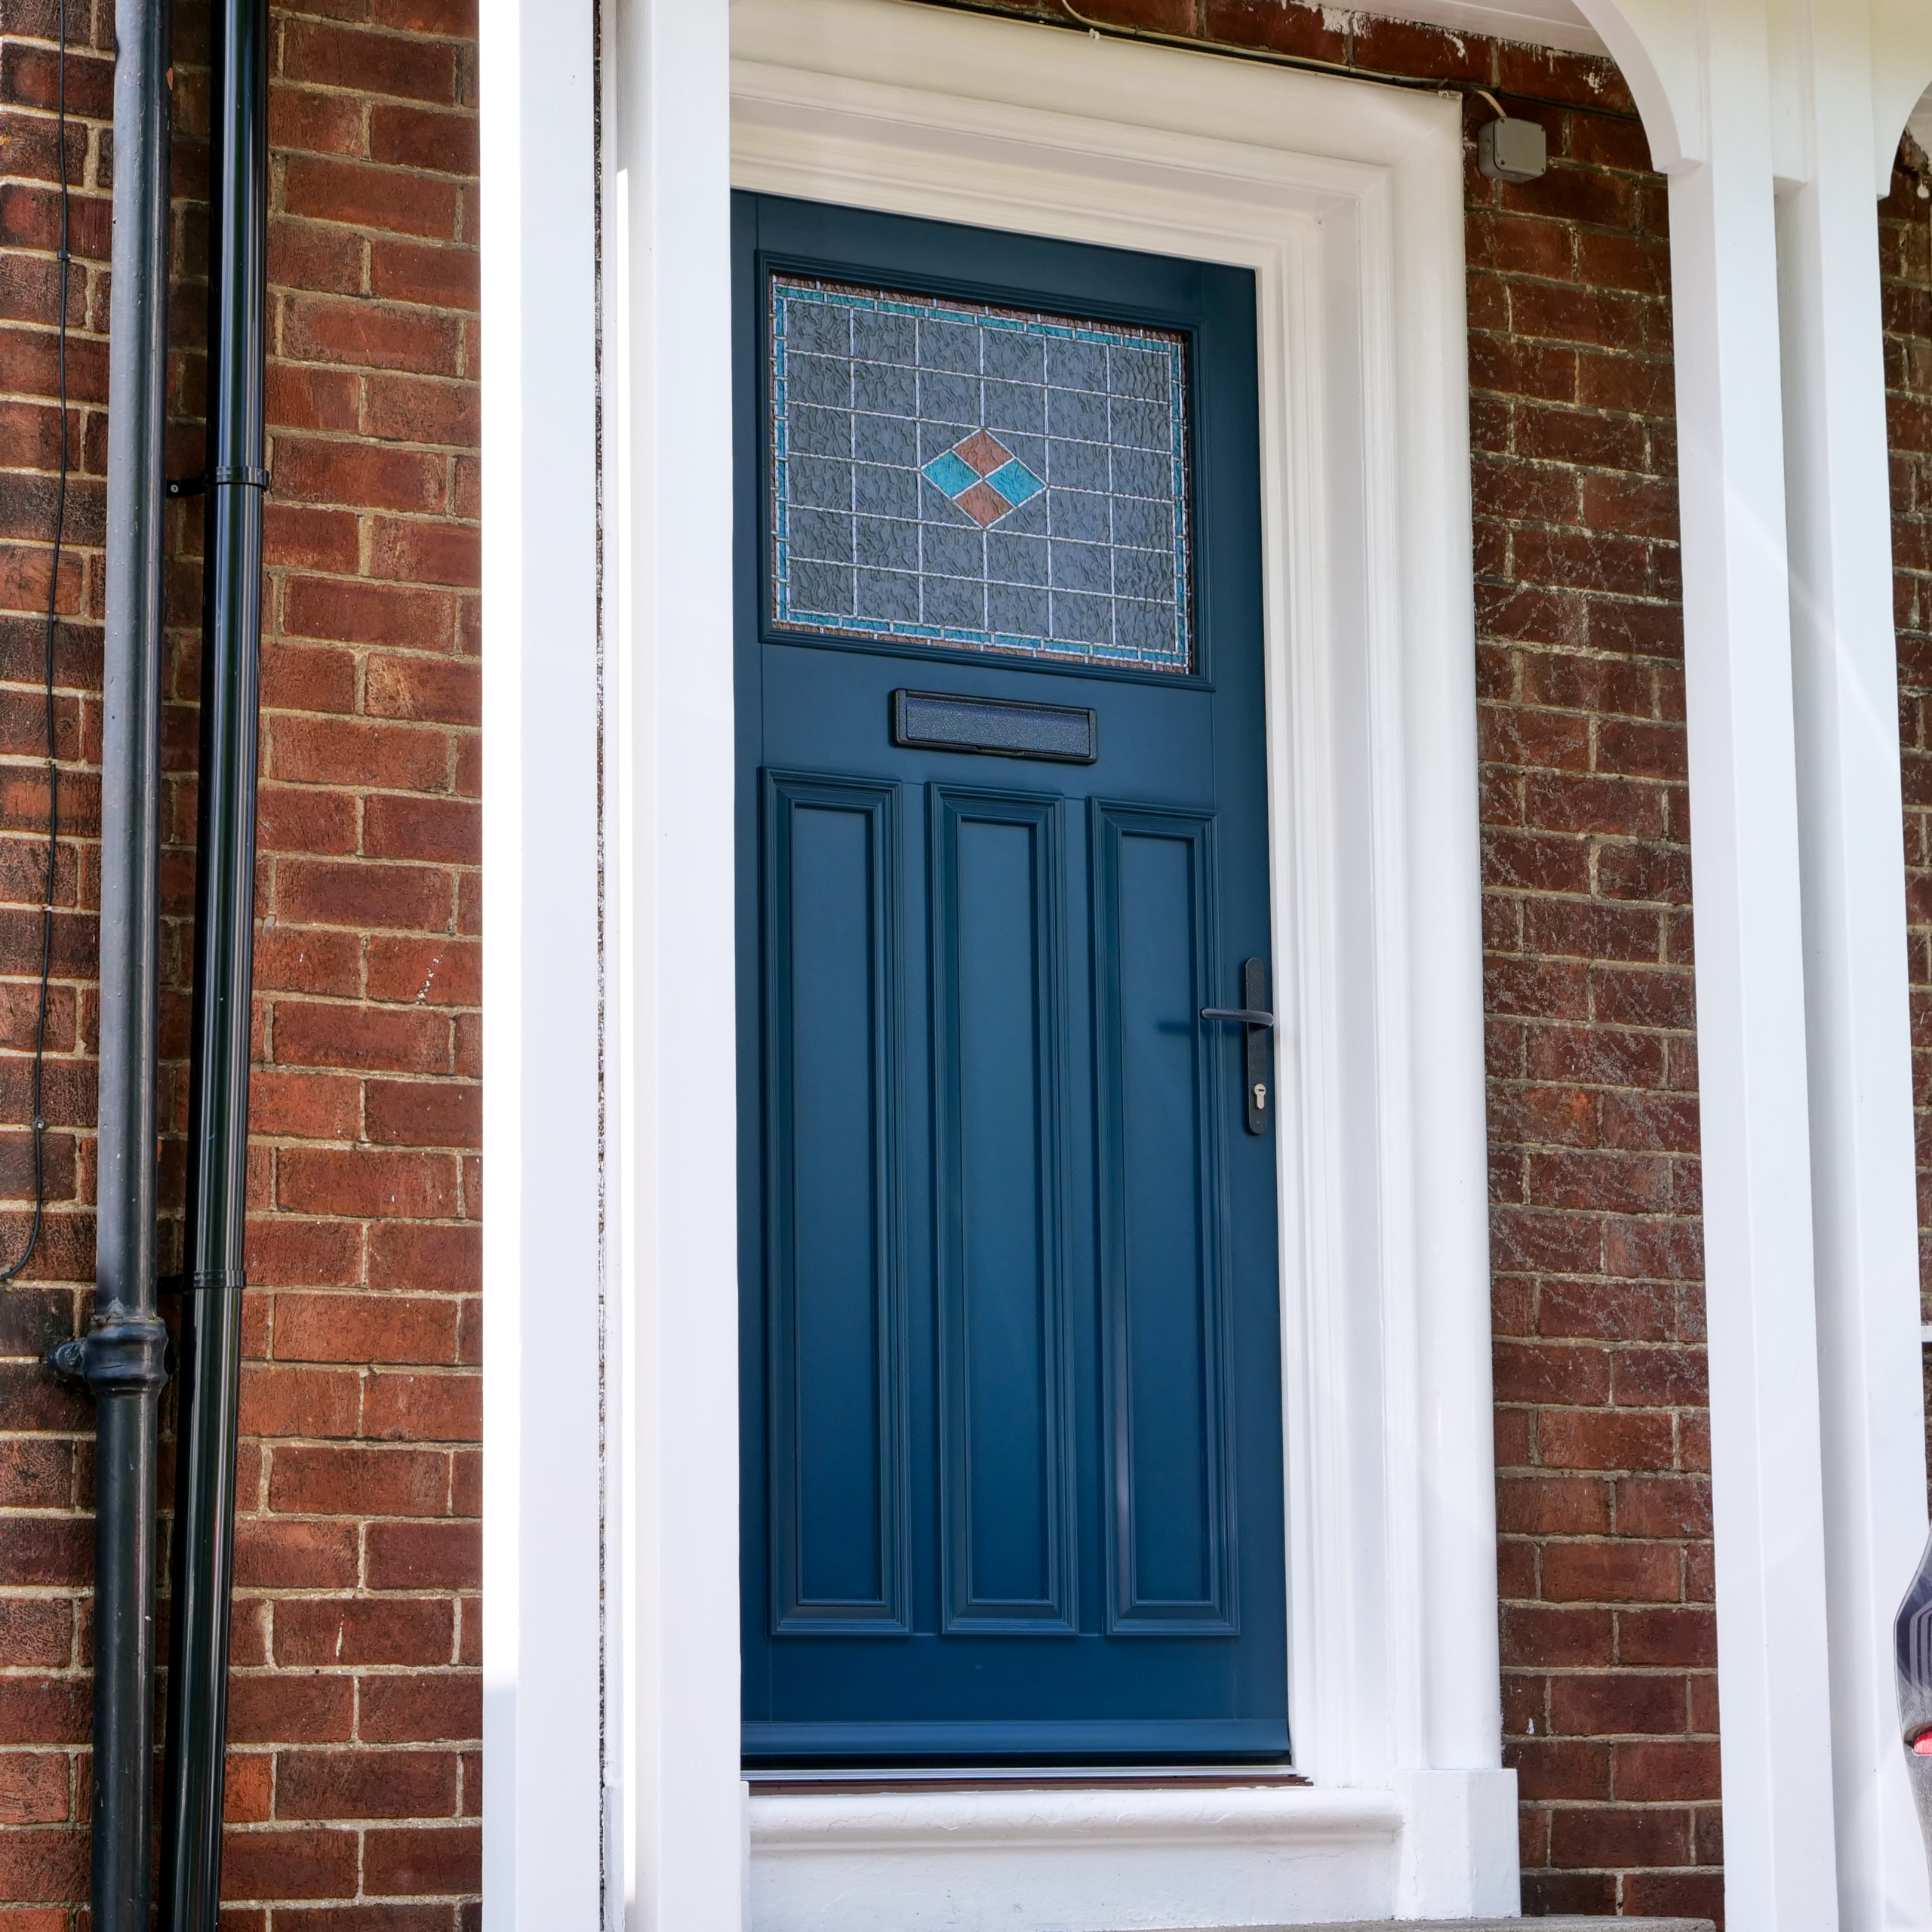 blue Davenport door with lead detailing